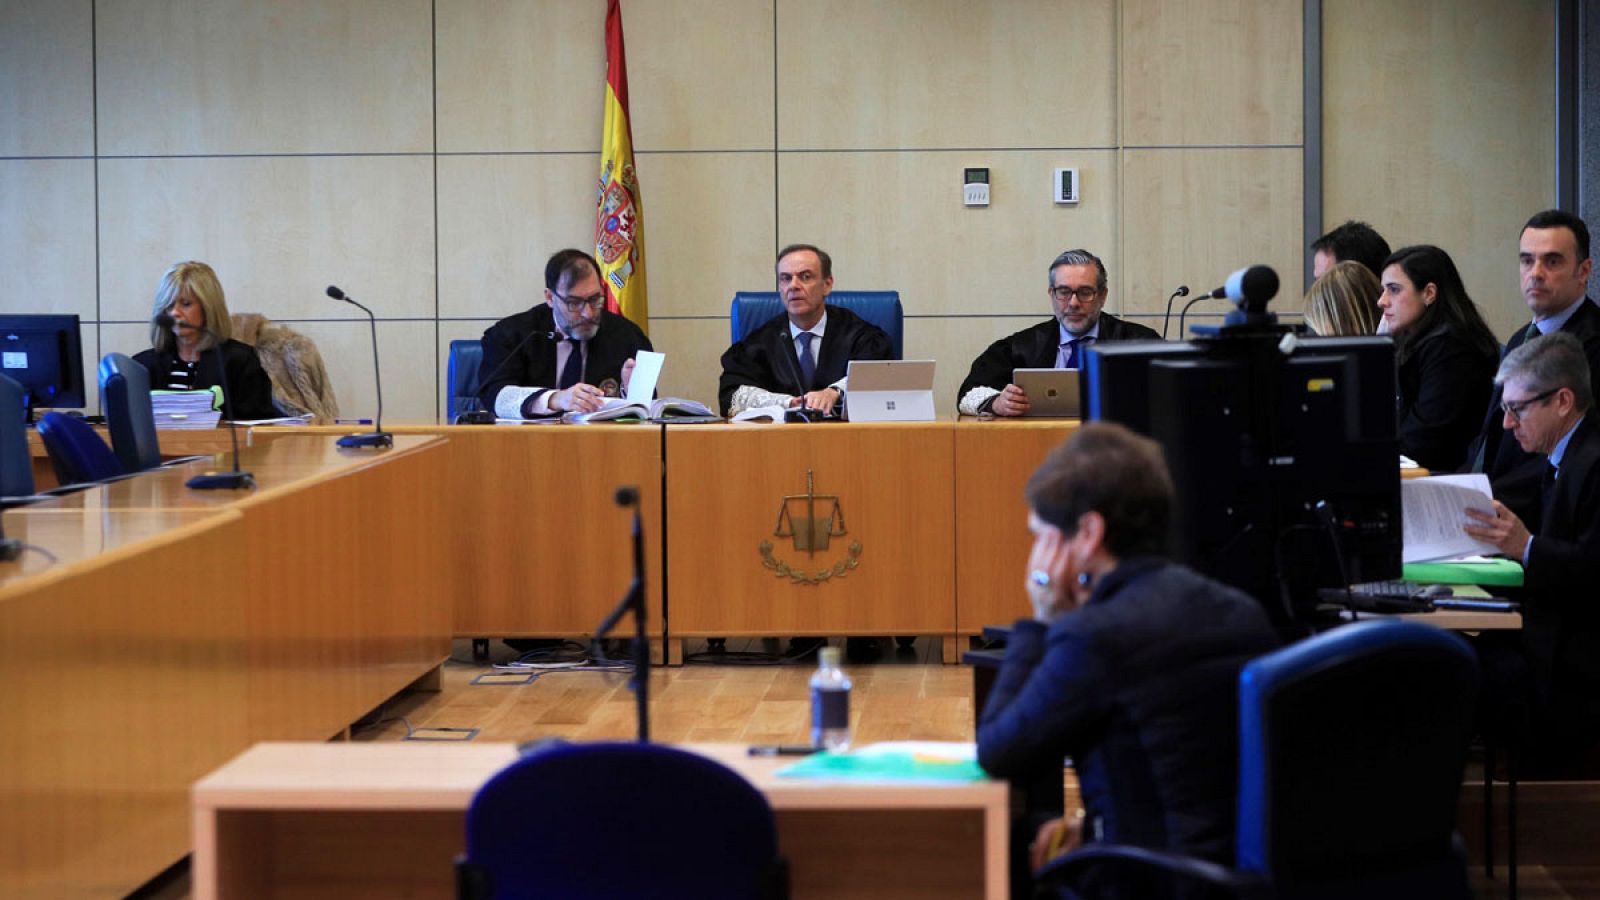 La Audiencia Nacional ratifica las penas por la agresión de Alsasua al no apreciar delito terrorismo